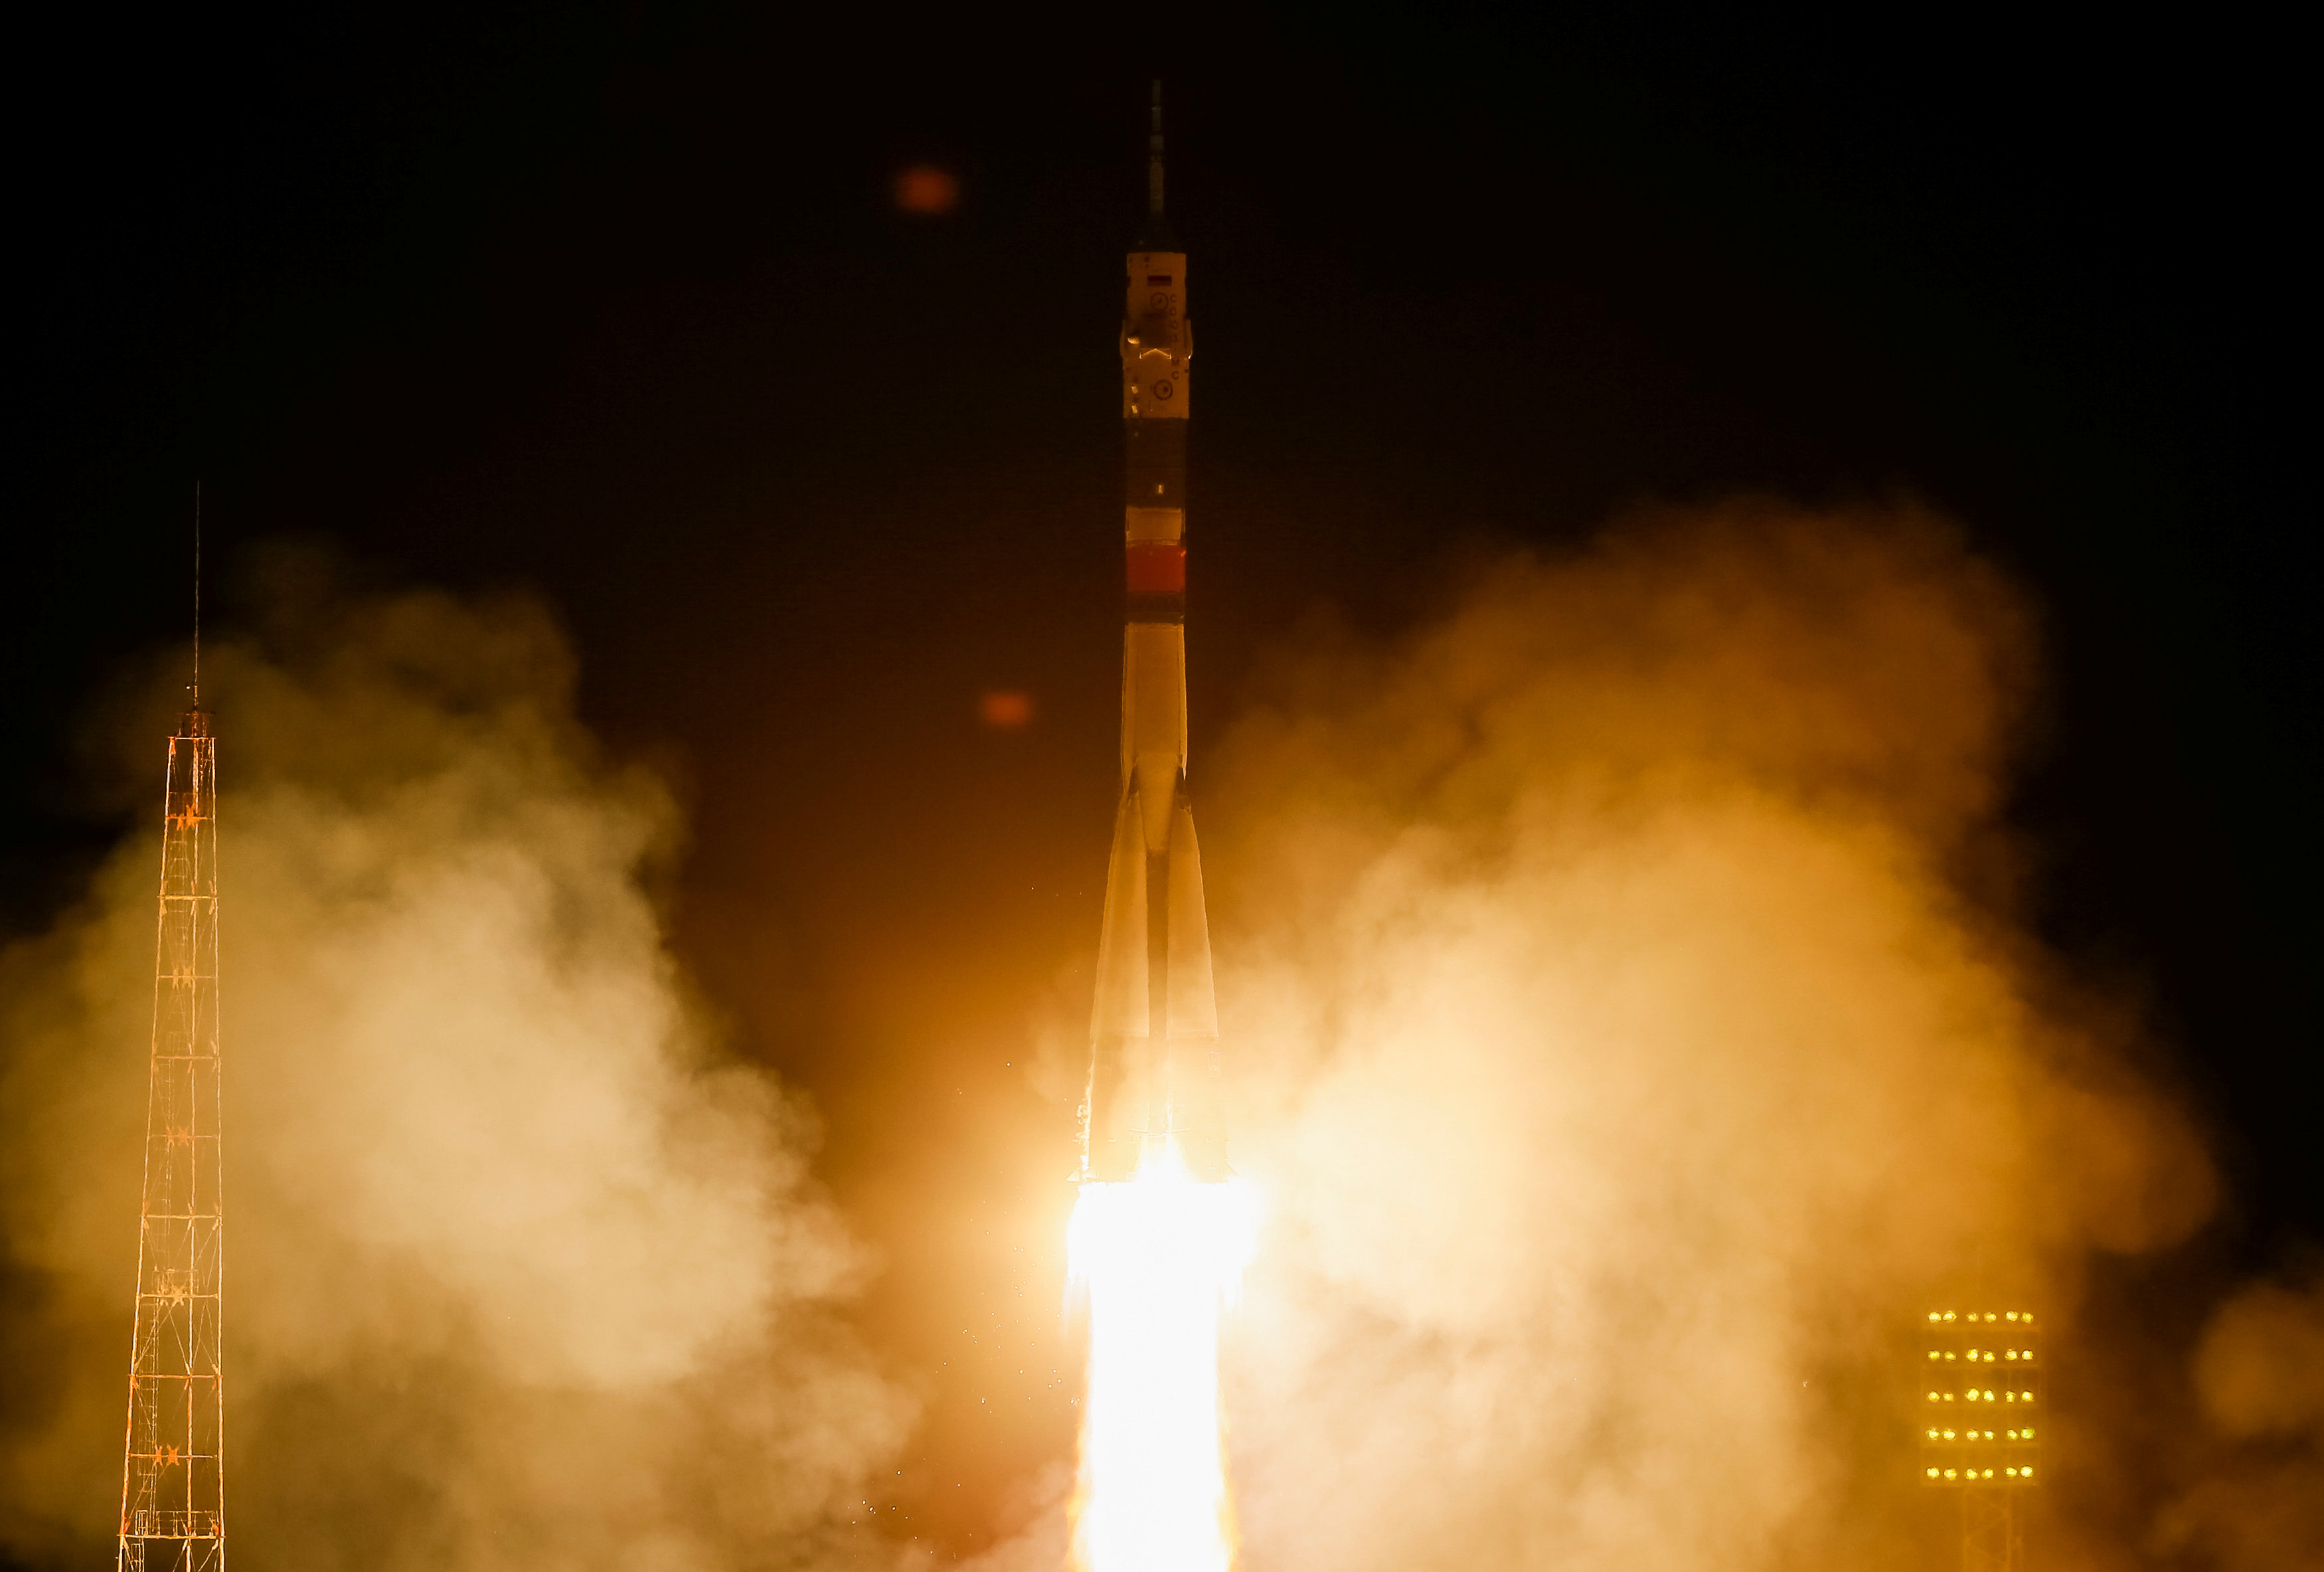 Despega nave Soyuz tres astronautas estacion espacial internacional